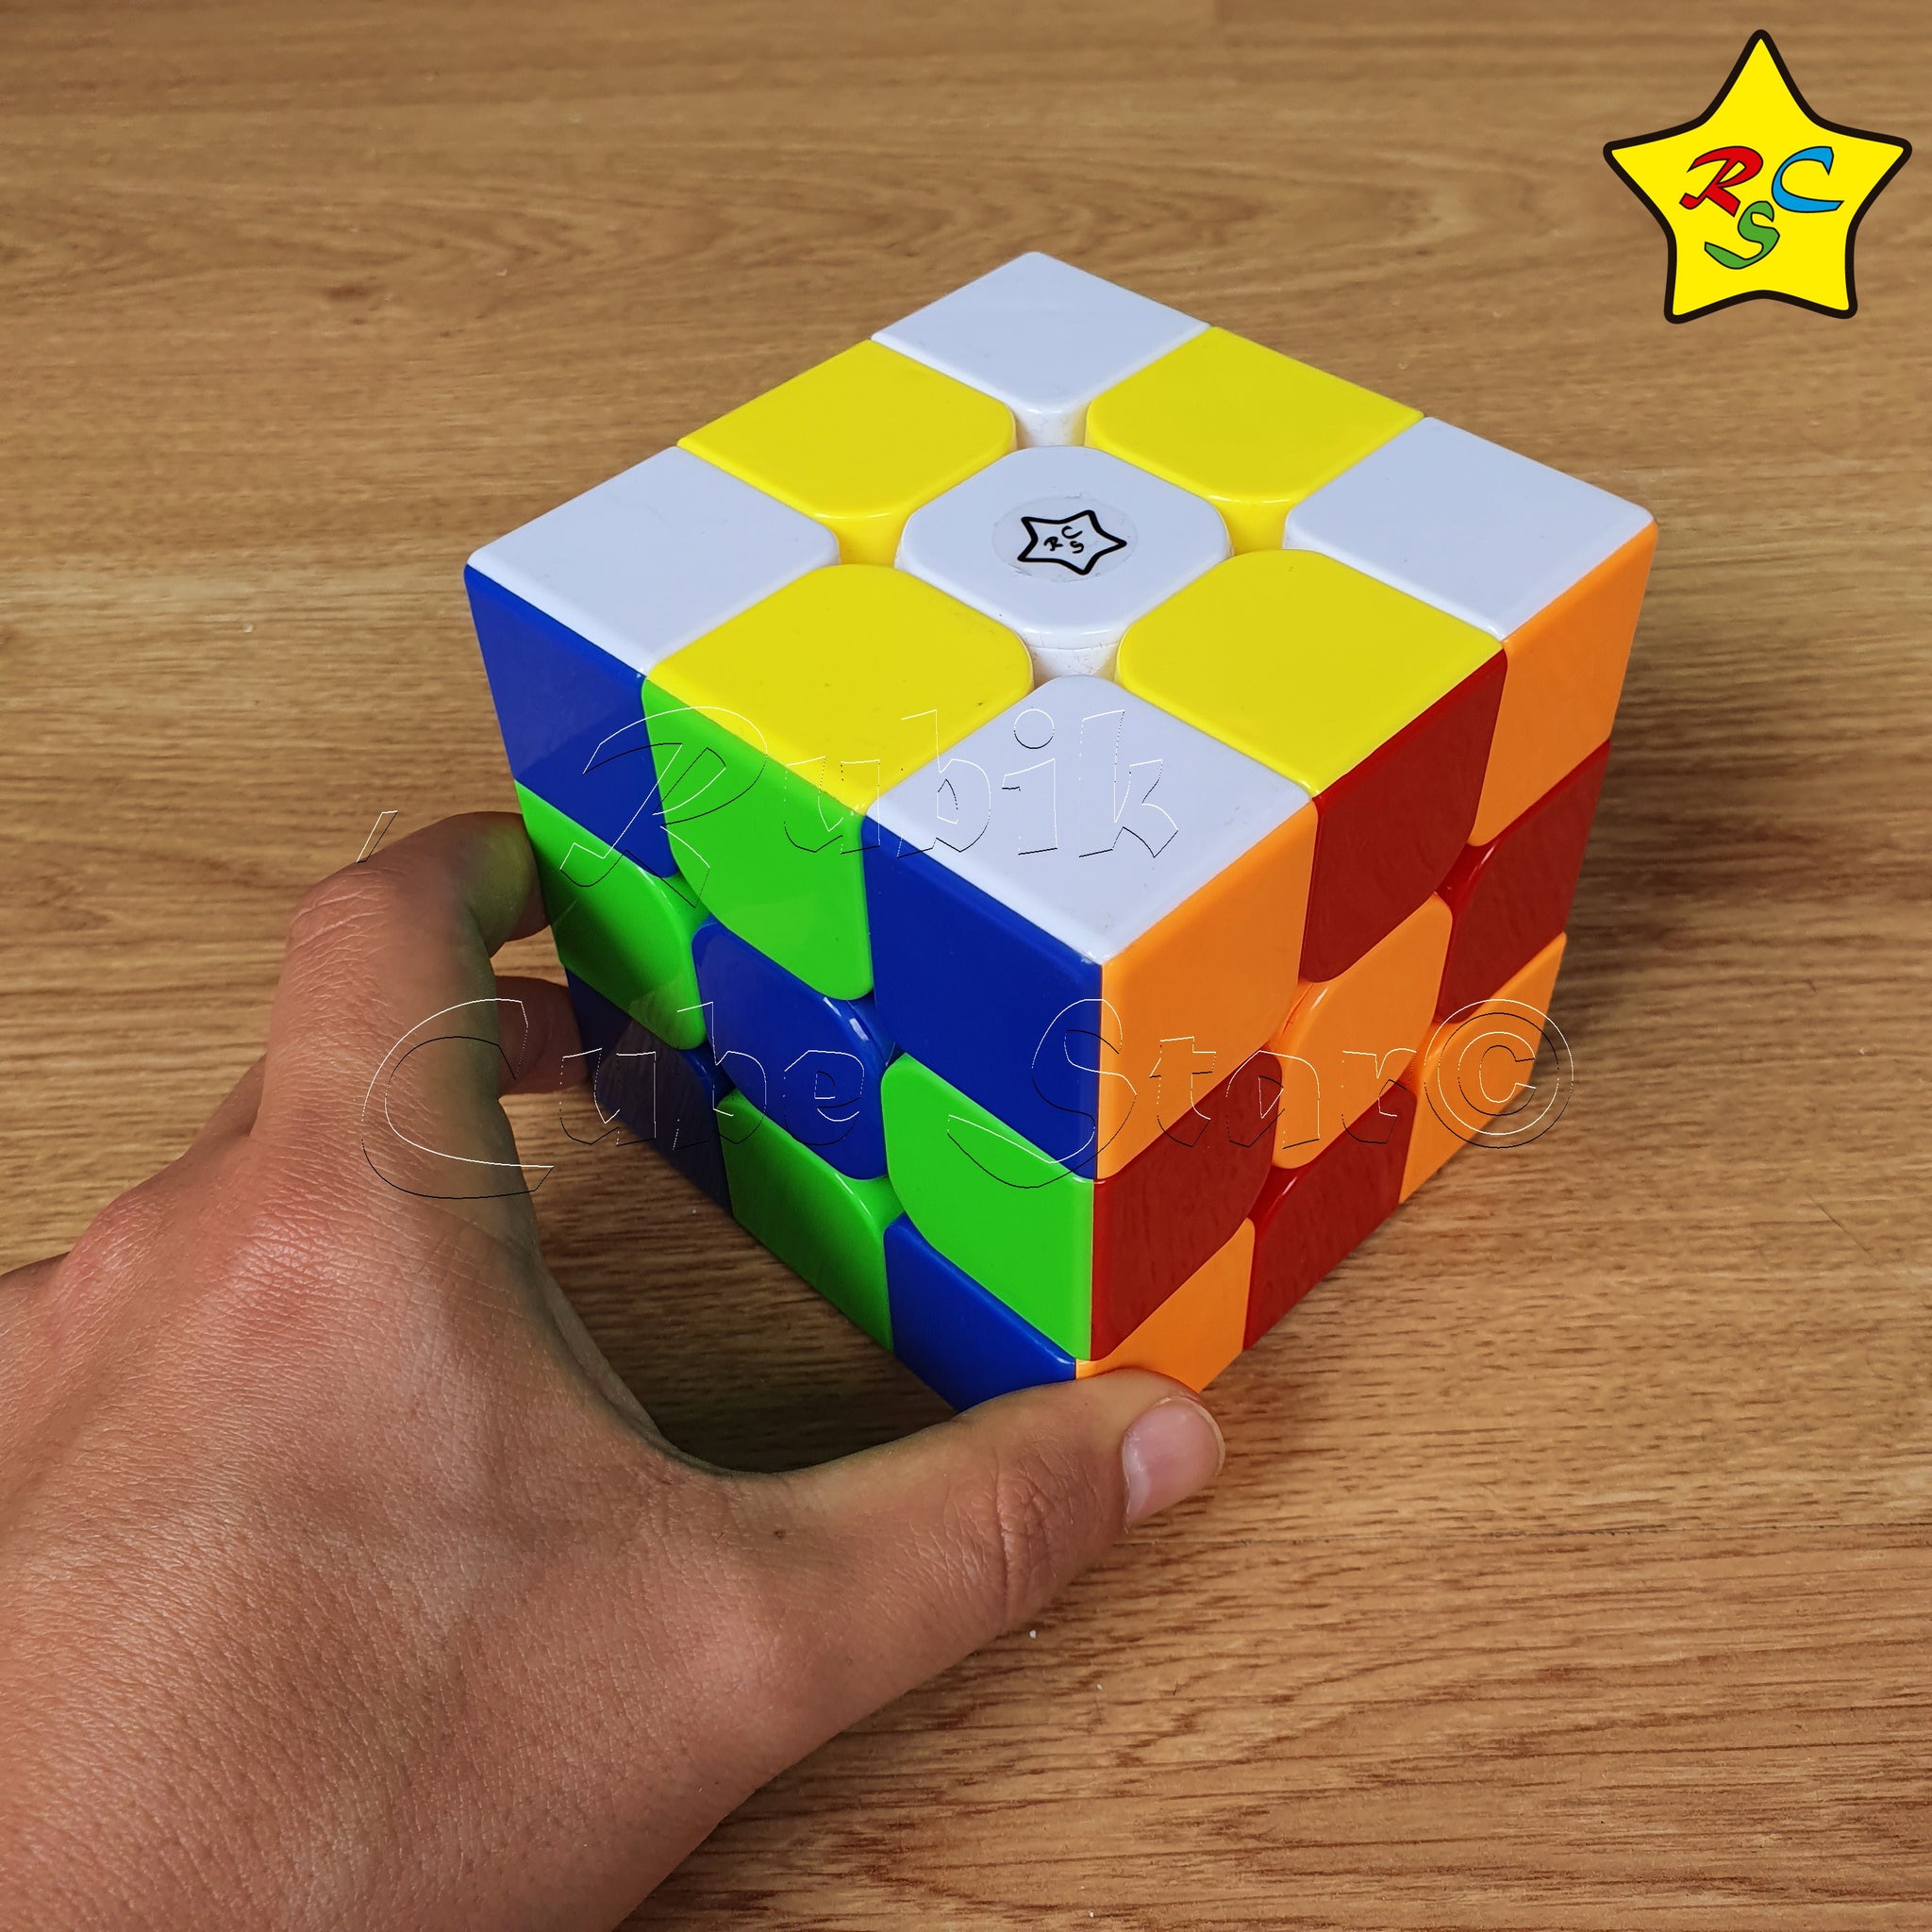 Cubo De Rubik Gigante Cubo Rubik 3x3 9 cm Super Grande Didactico Magic Cube Stickerless – Rubik  Cube Star